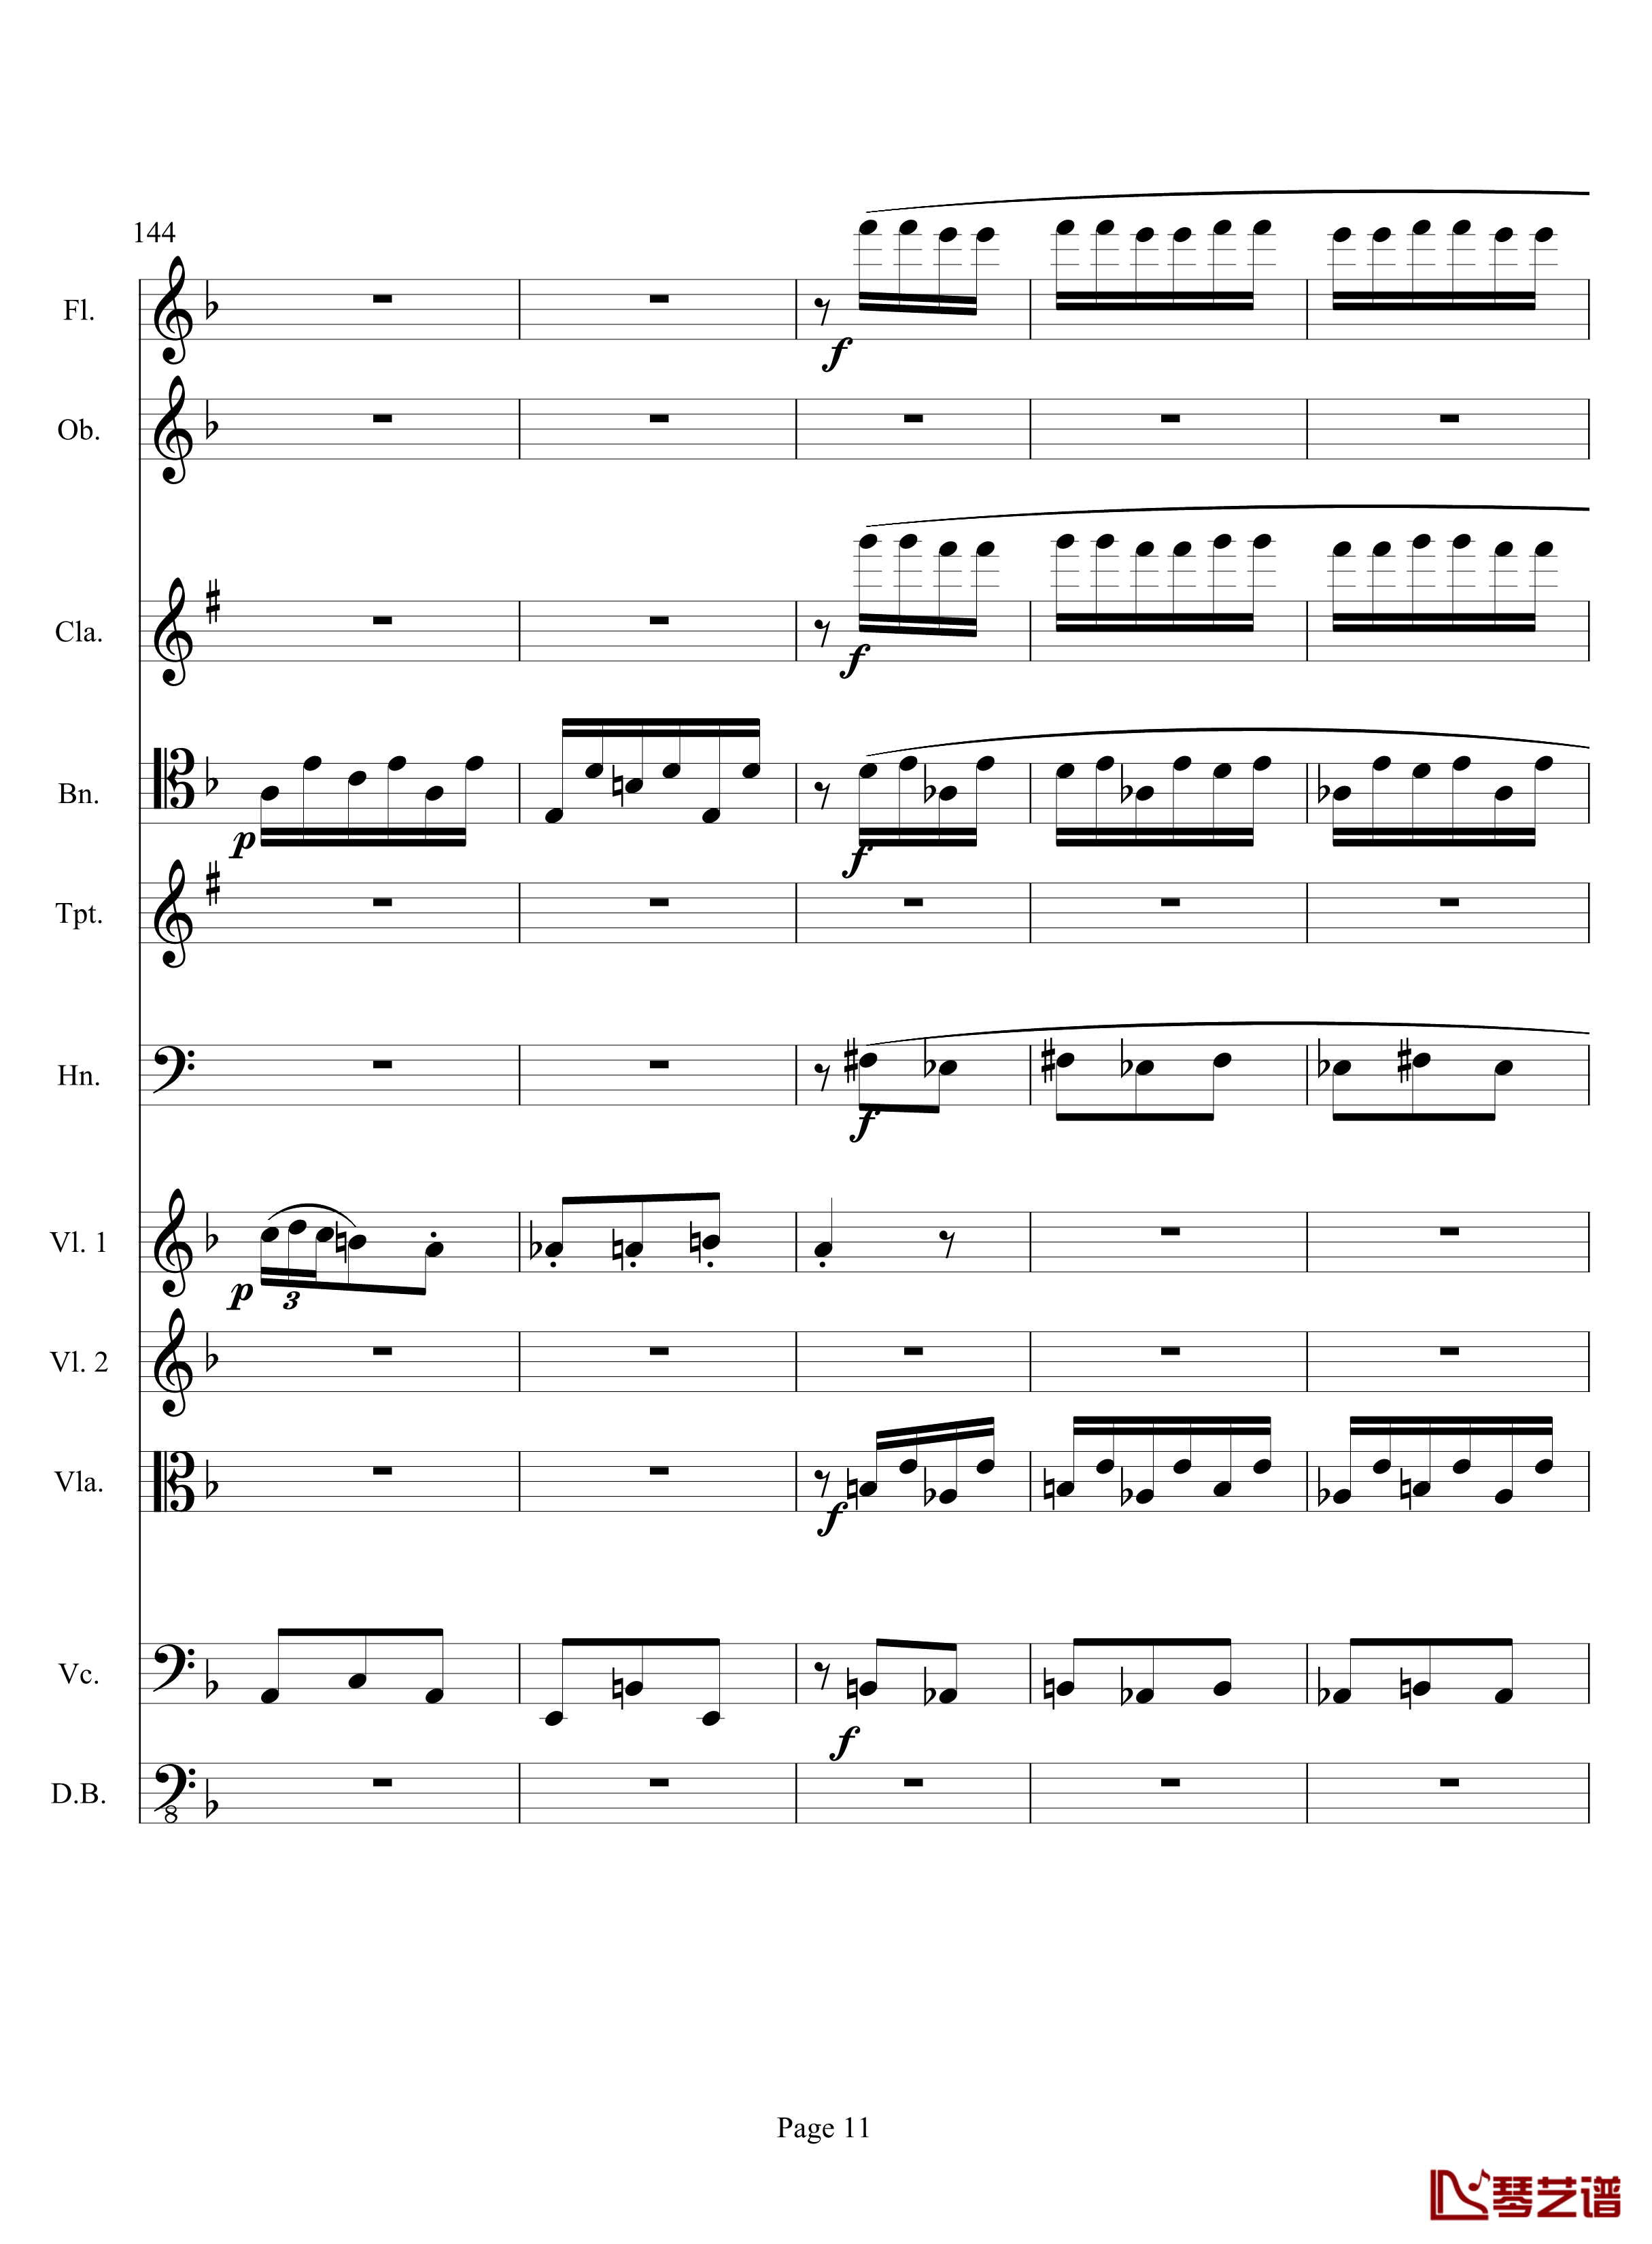 奏鸣曲之交响钢琴谱-第17首-Ⅲ-贝多芬-beethoven11